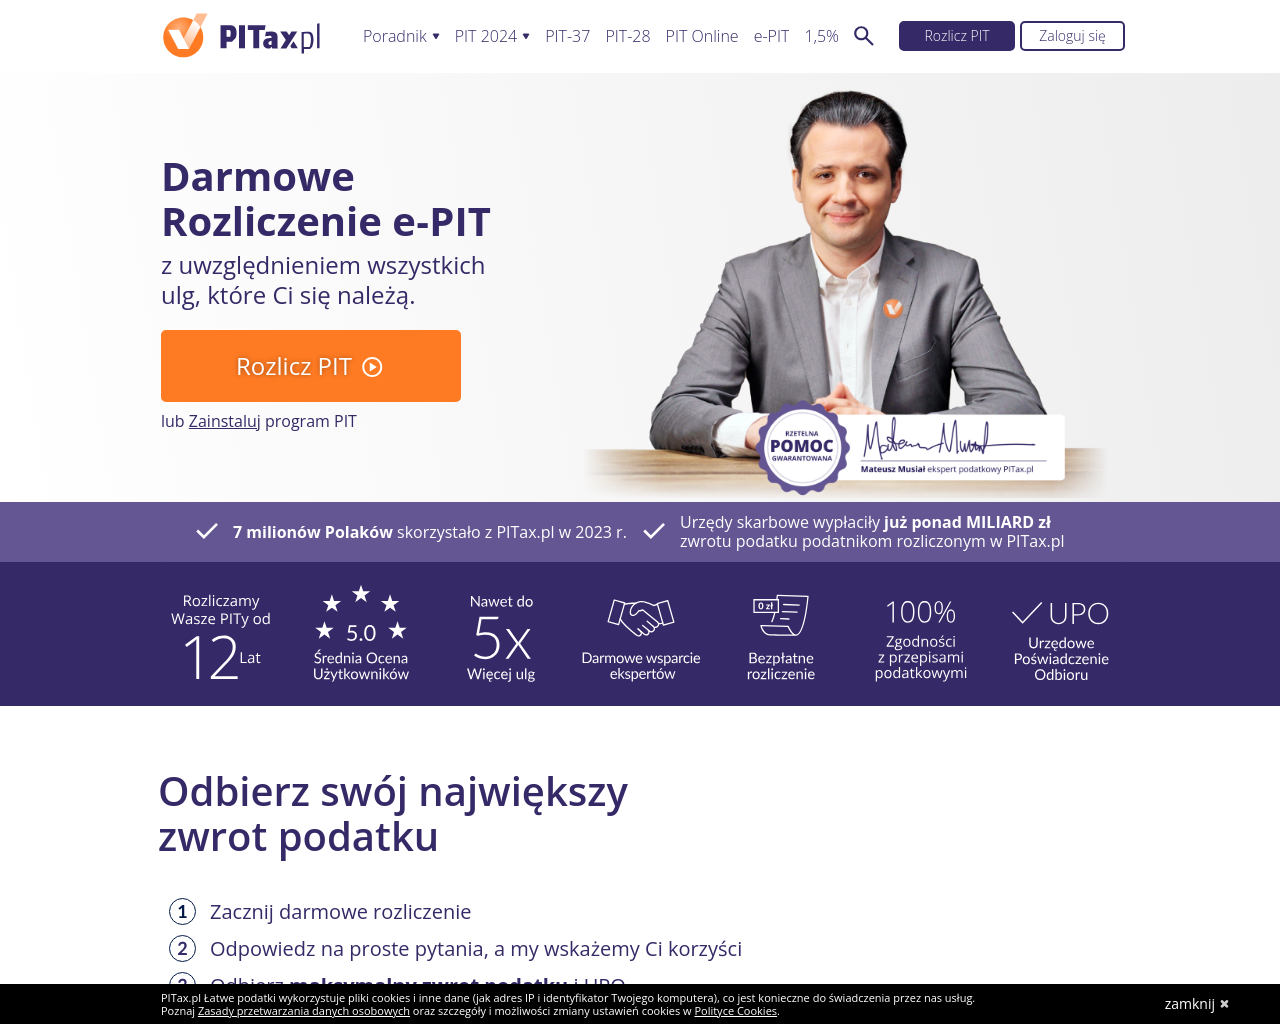 pitax.pl